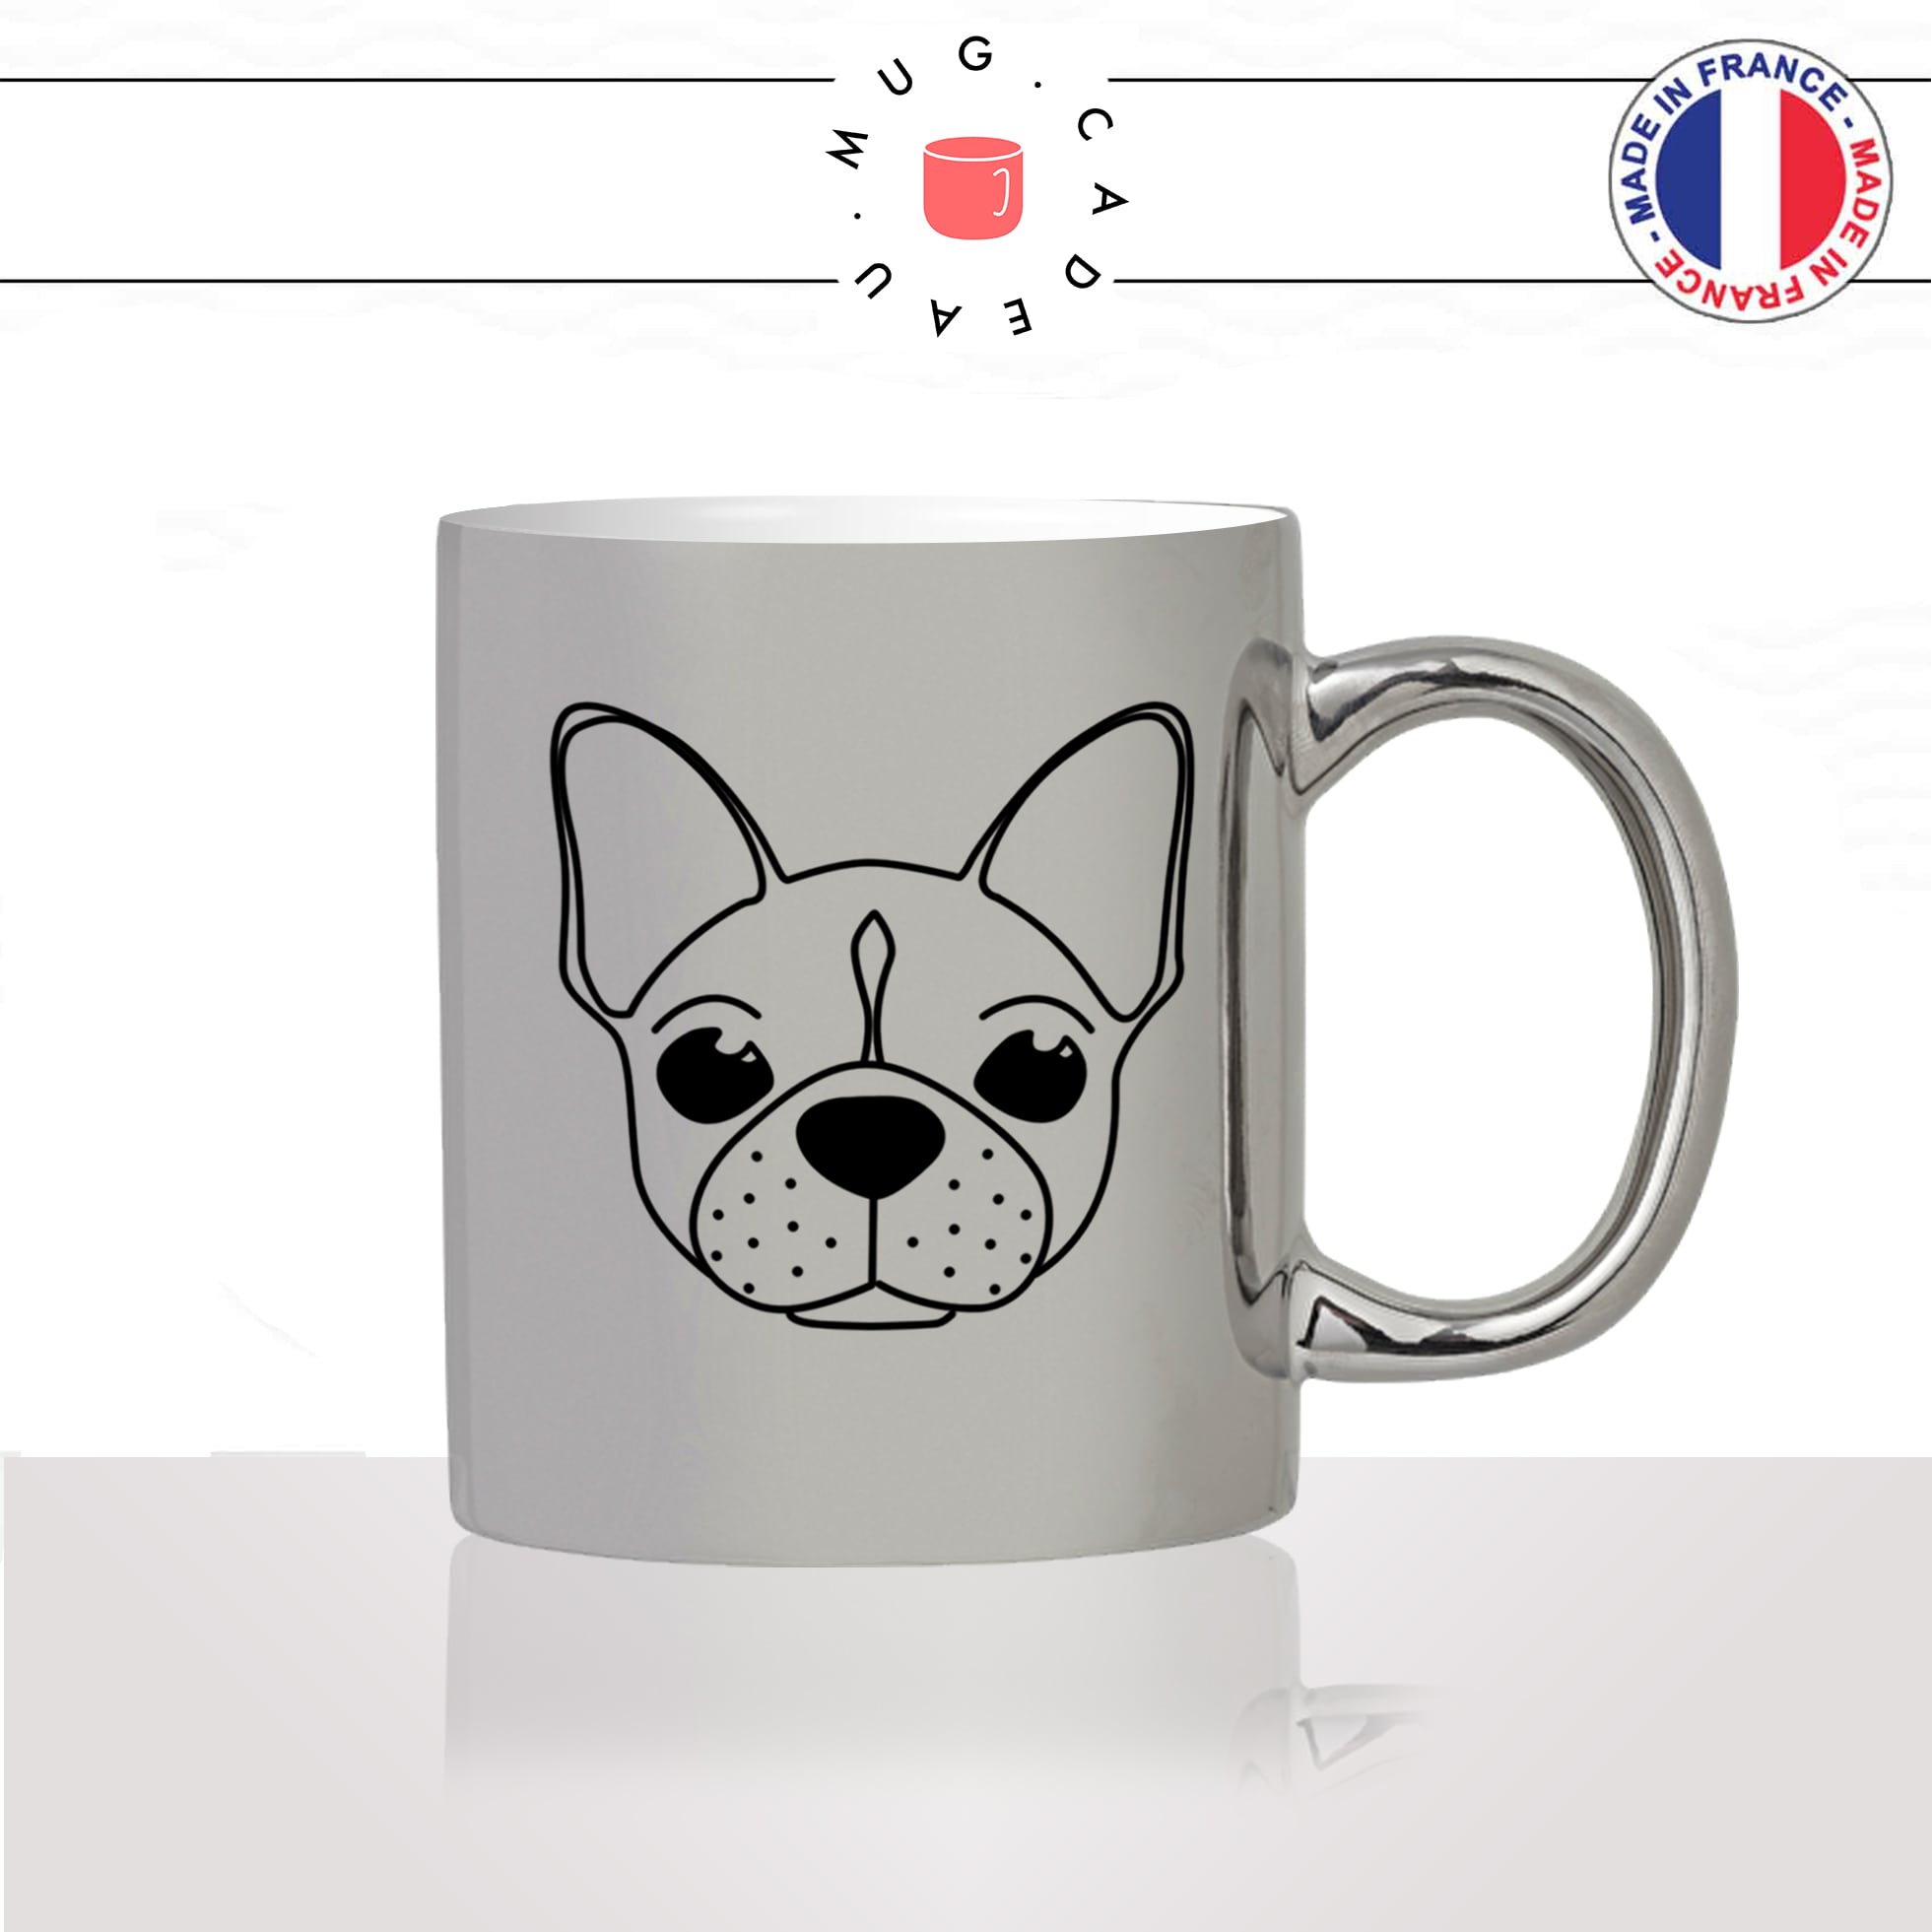 tasse-mug-argenté-silver-argent-tete-de-chien-race-bulldog-pug-amour-mignon-animal-chiot-noir-fun-café-thé-idée-cadeau-original-personnalisé2-min